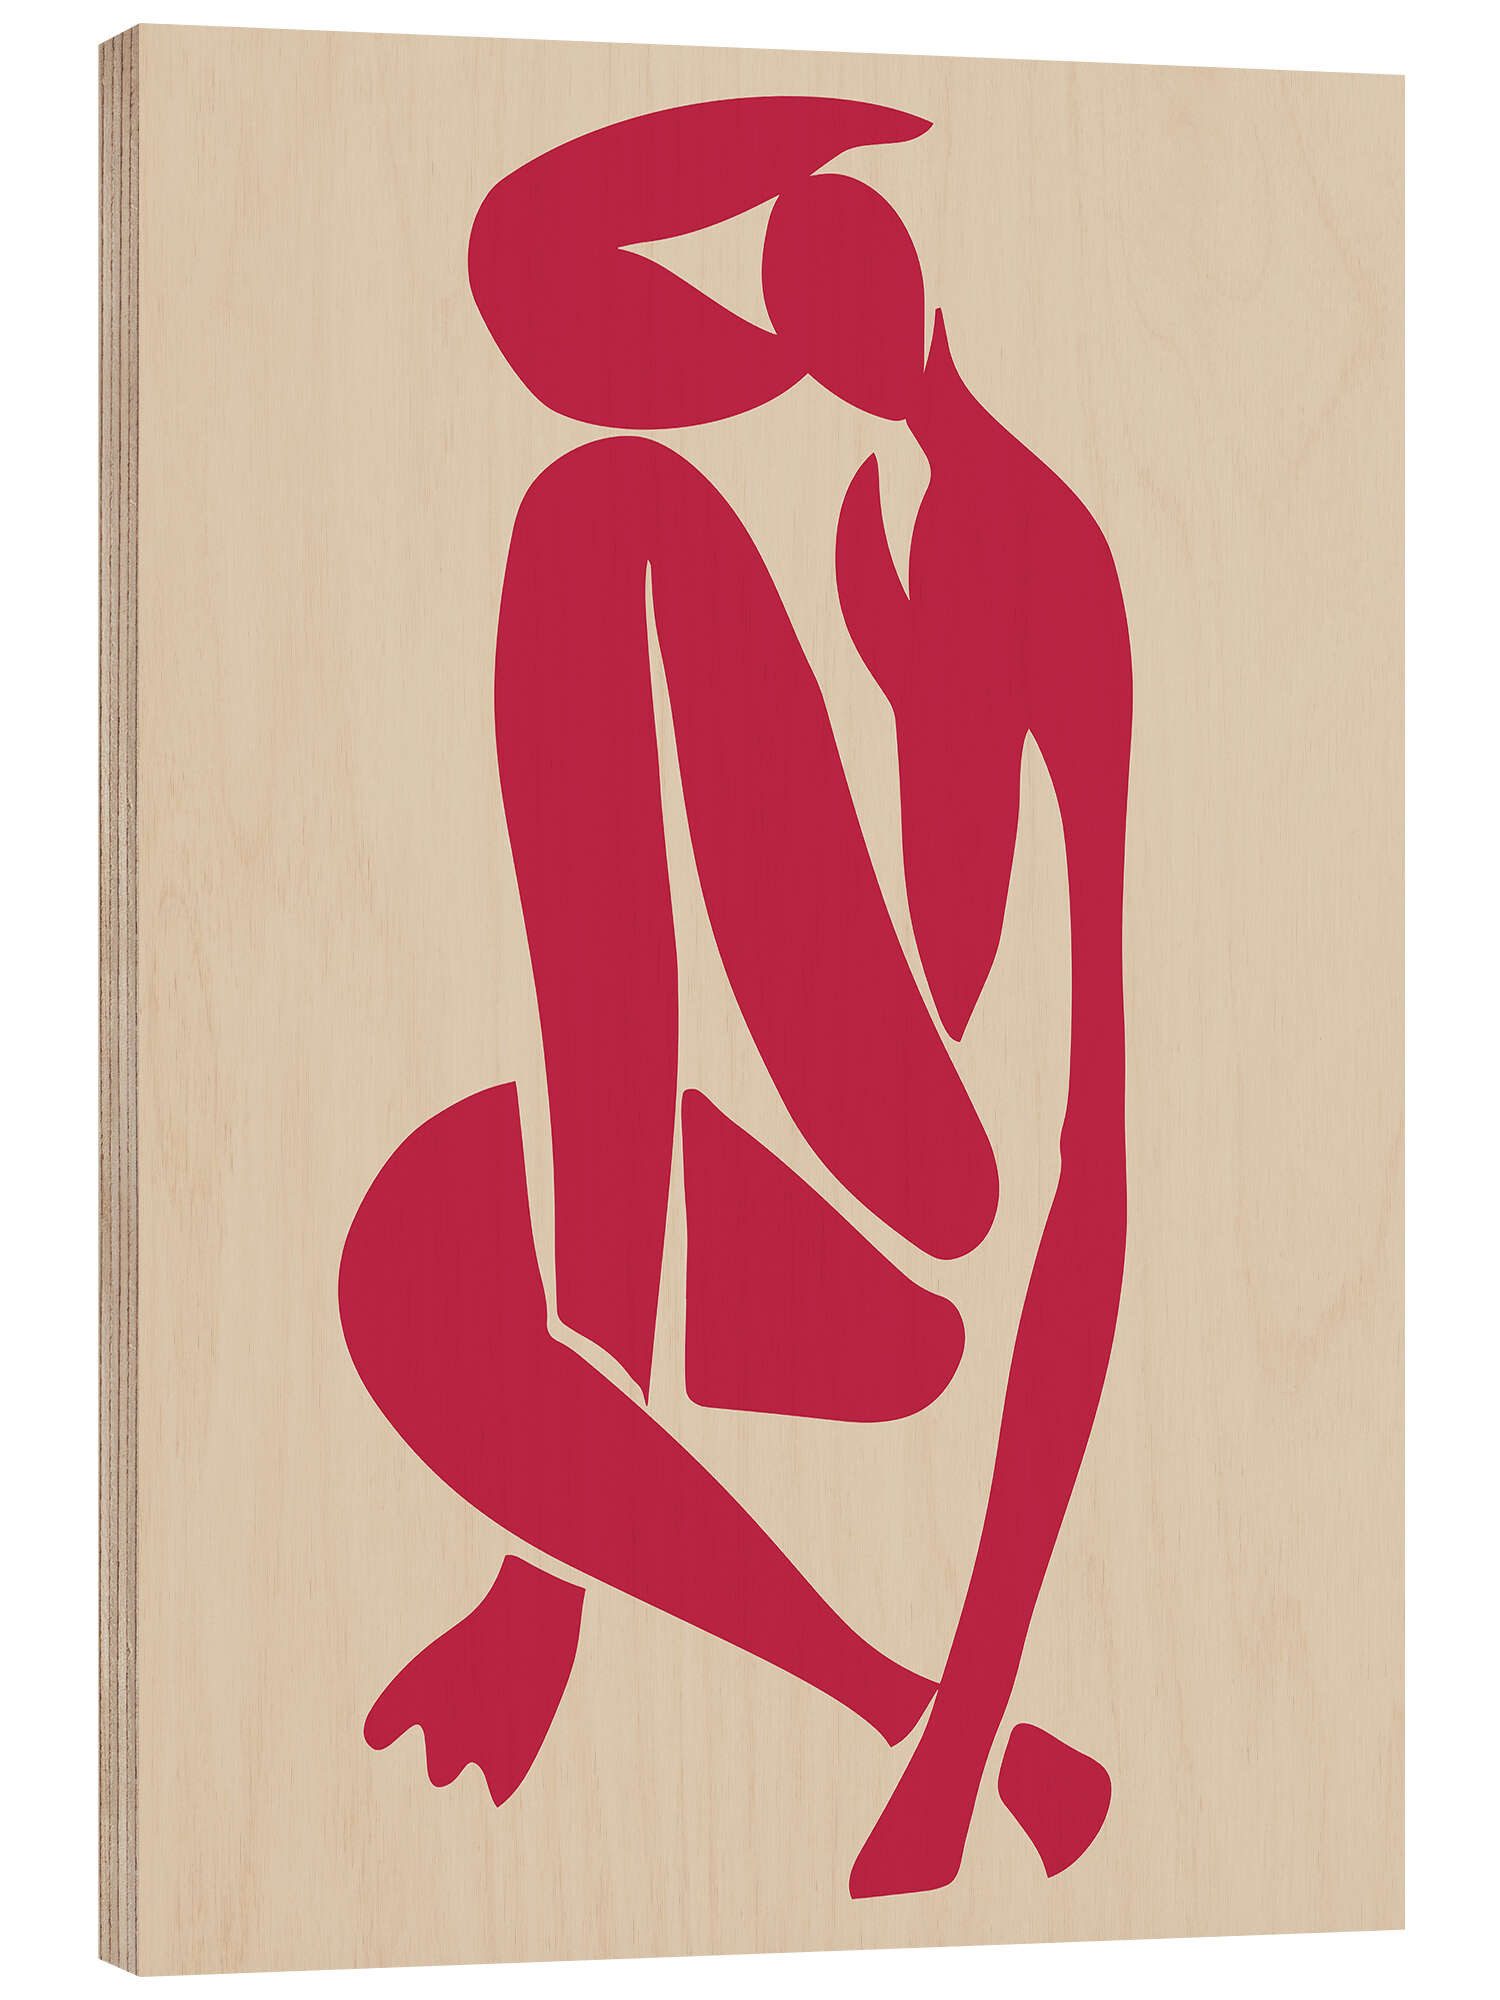 Posterlounge Holzbild Matisse Inspired Art, Viva Magenta Matisse Figurine II, Minimalistisch Grafikdesign